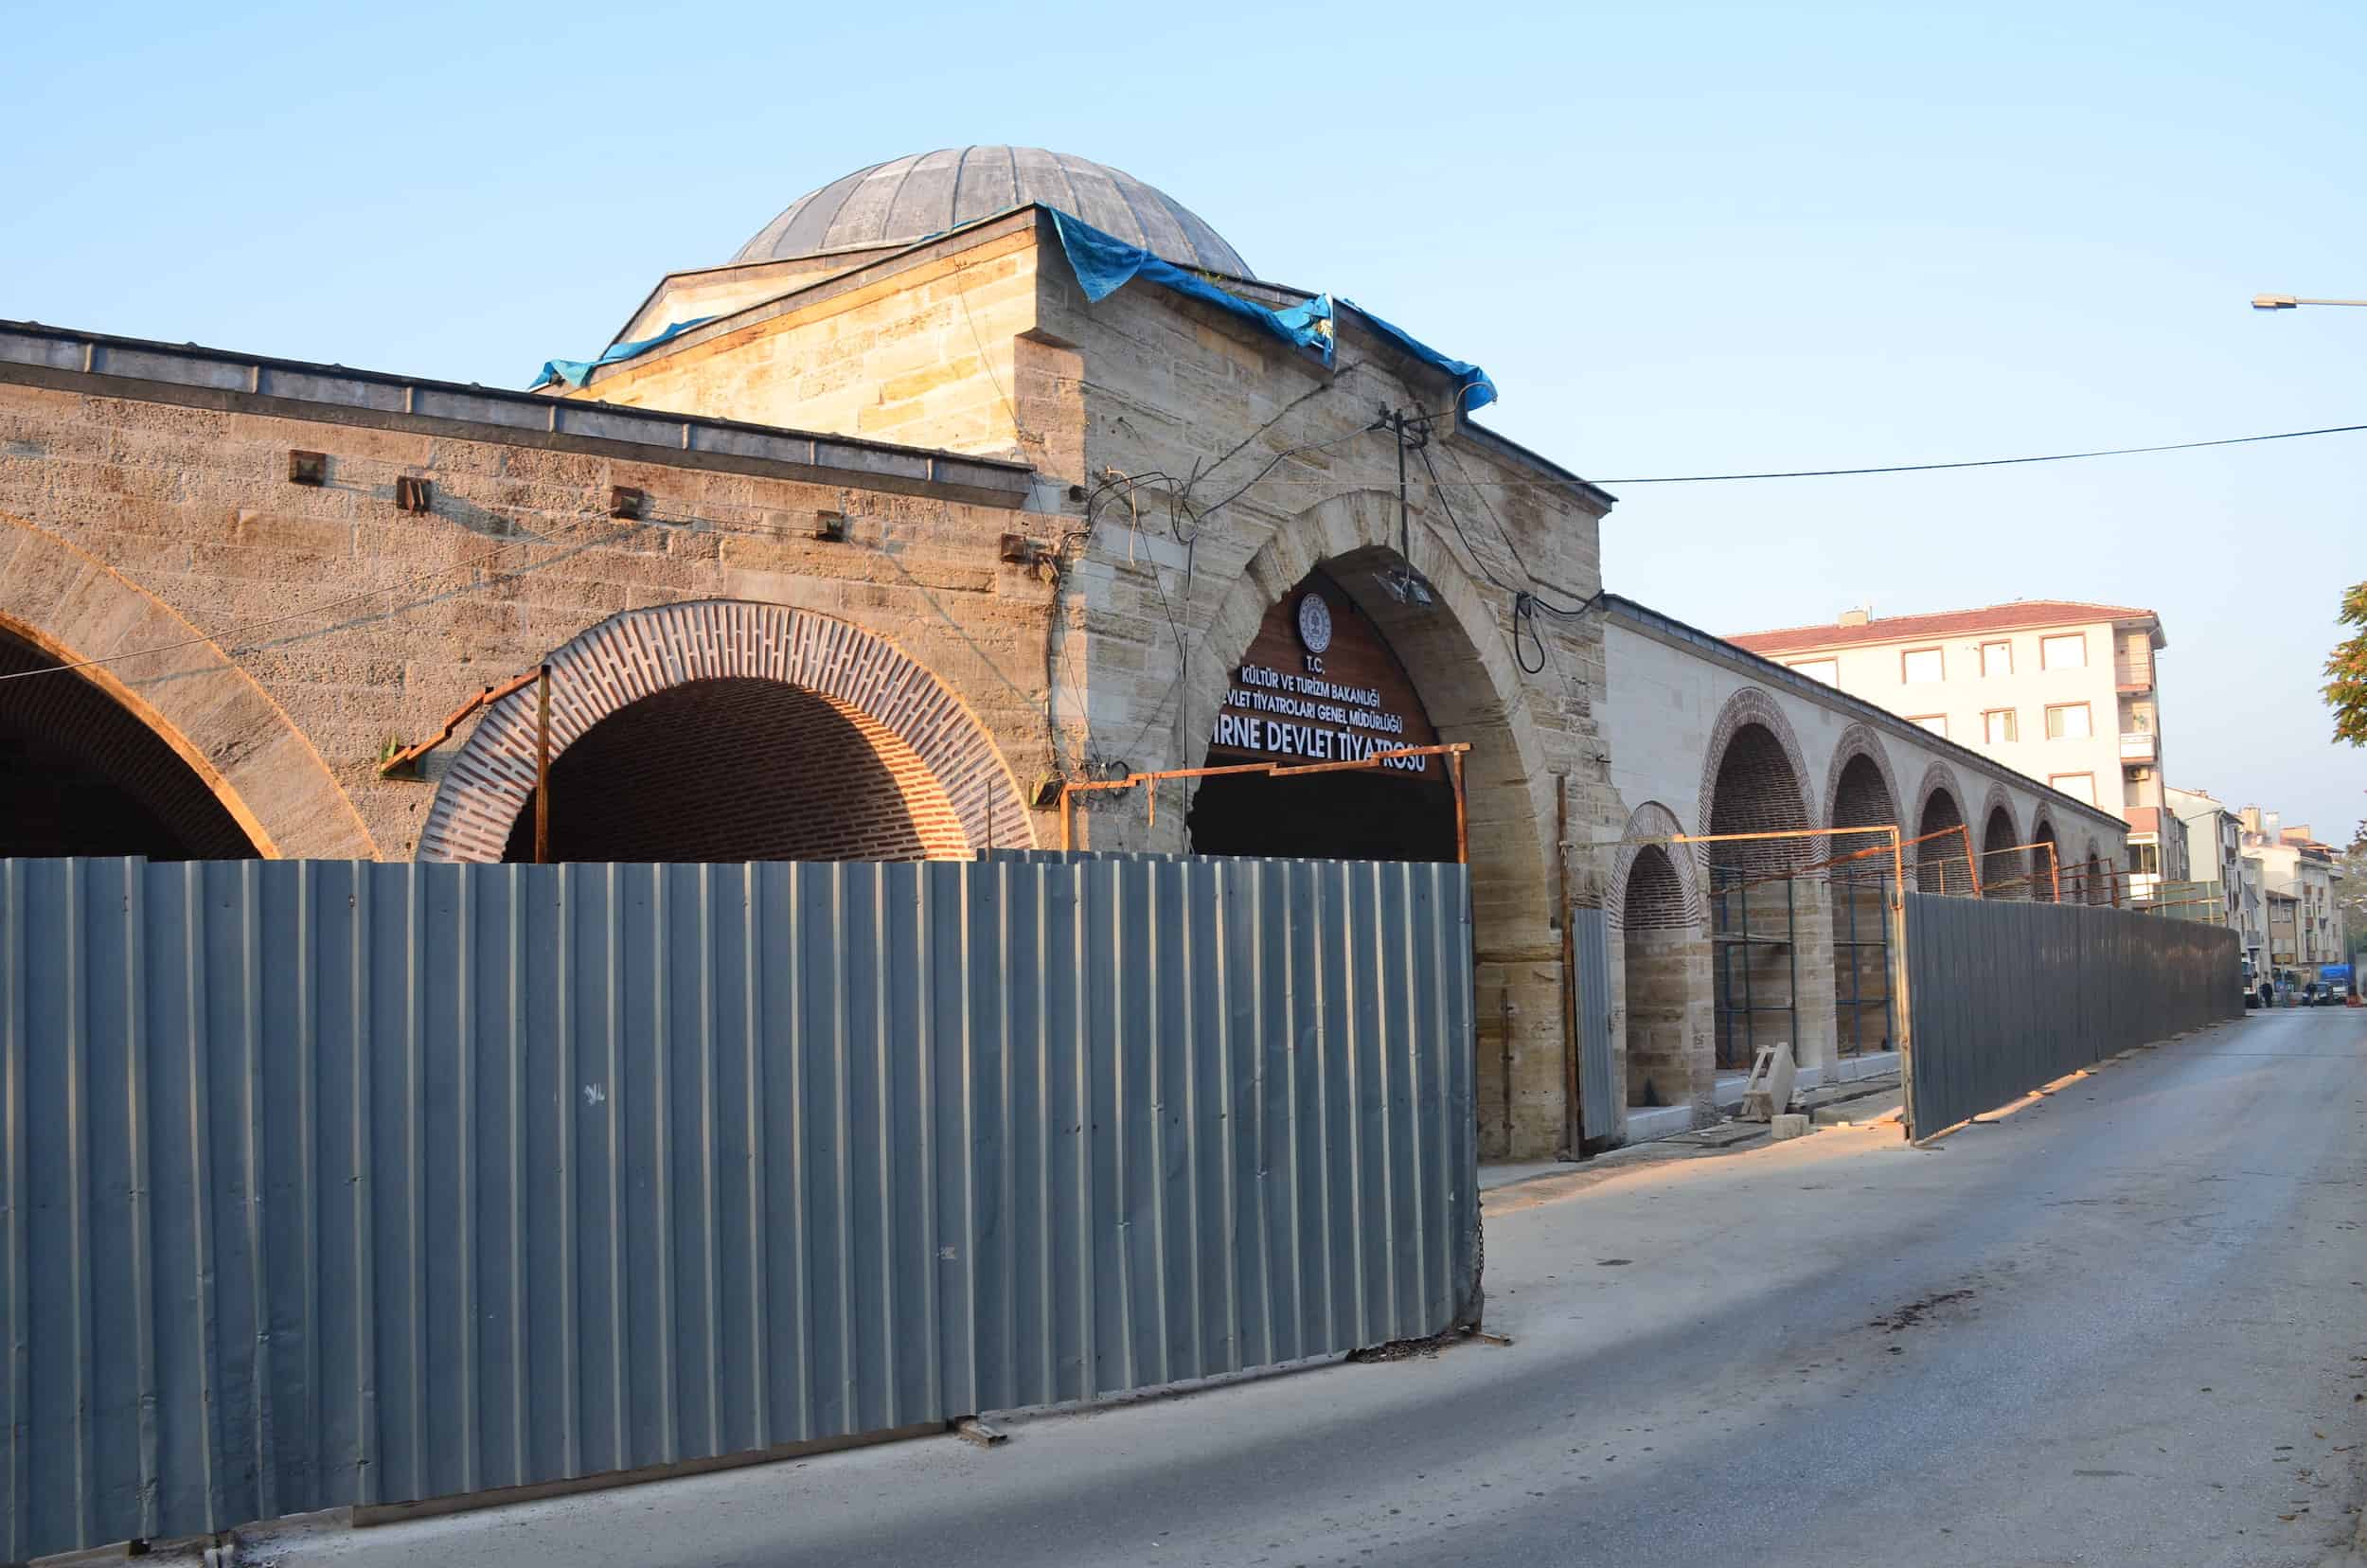 Ekmekçizade Ahmed Pasha Caravanserai in Edirne, Turkey